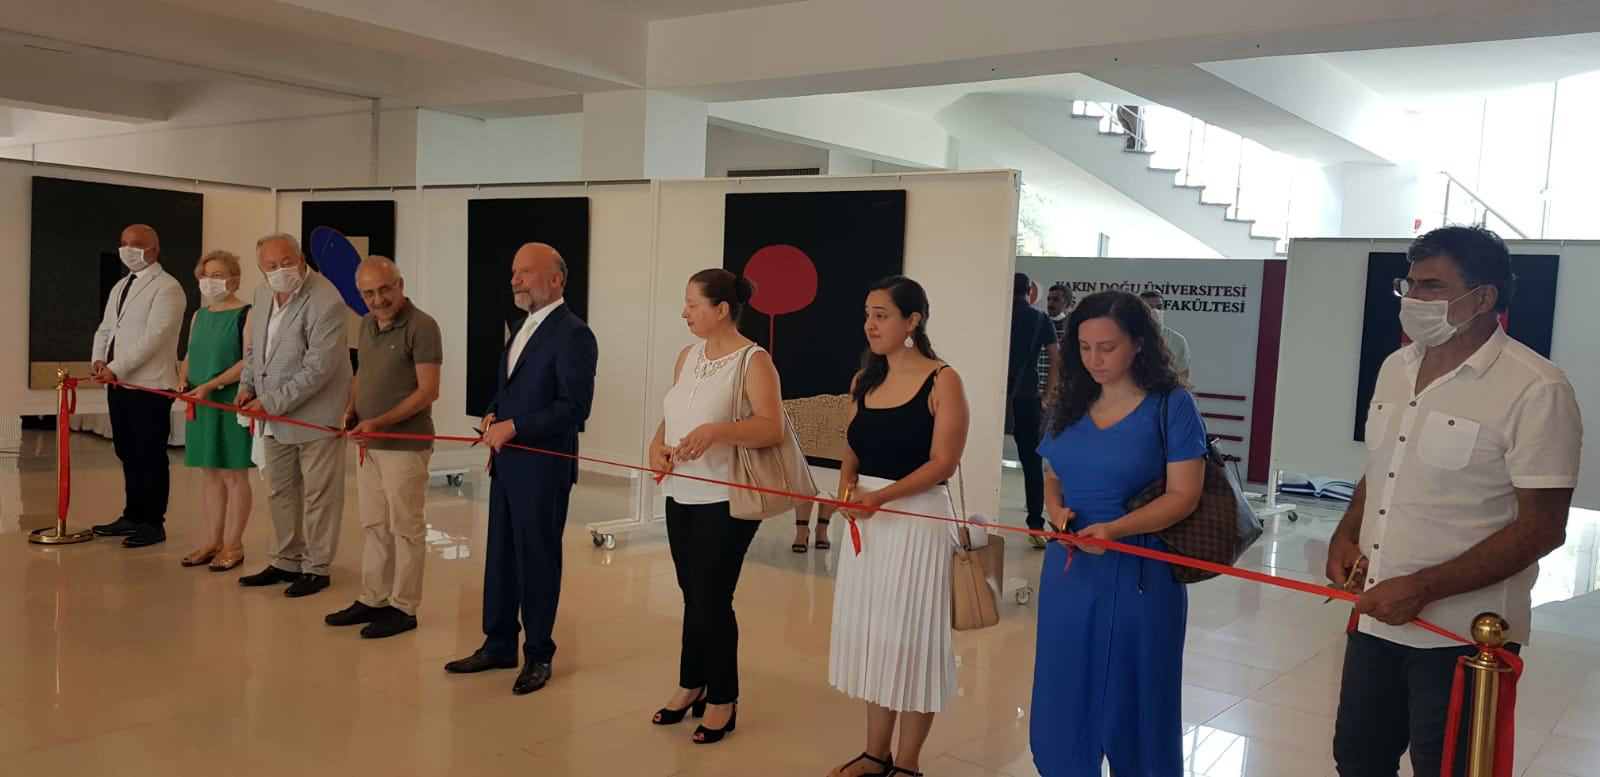 Kıbrıs Modern Sanat Müzesi için, Kıbrıslı Türk Sanatçı Osman Atila Keten’in, 27 Resim ve 4 Parçadan Oluşan Heykeli ile “Varoluşa Dokunmak” Adlı Kişisel Sergisi Açıldı